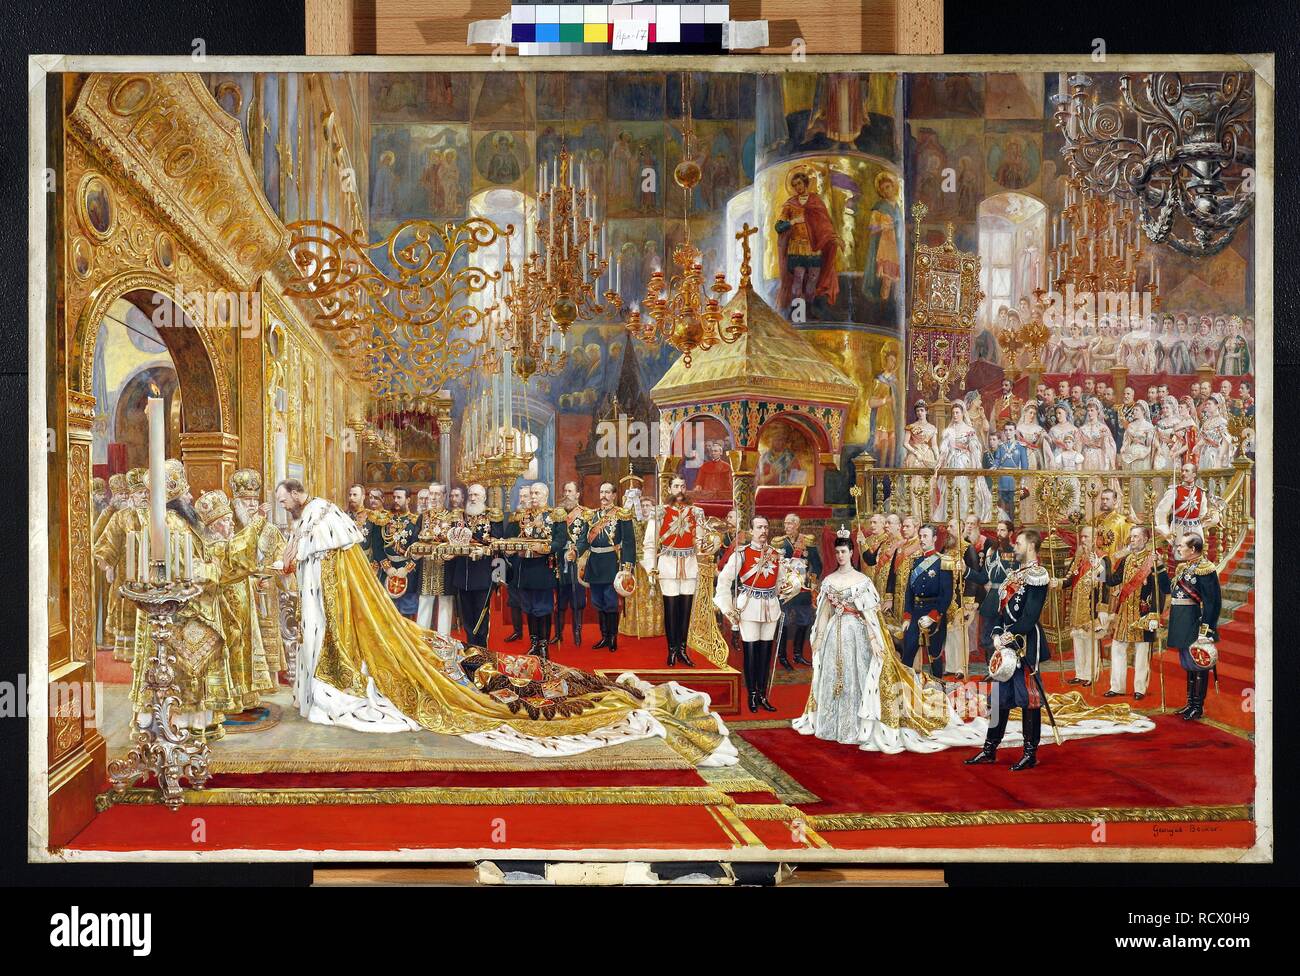 Incoronazione di Empreror Alexander III e l'Imperatrice Maria Fyodorovna. Museo: Membro Galleria Tretyakov di Mosca. Autore: BECKER, GEORGES. Foto Stock